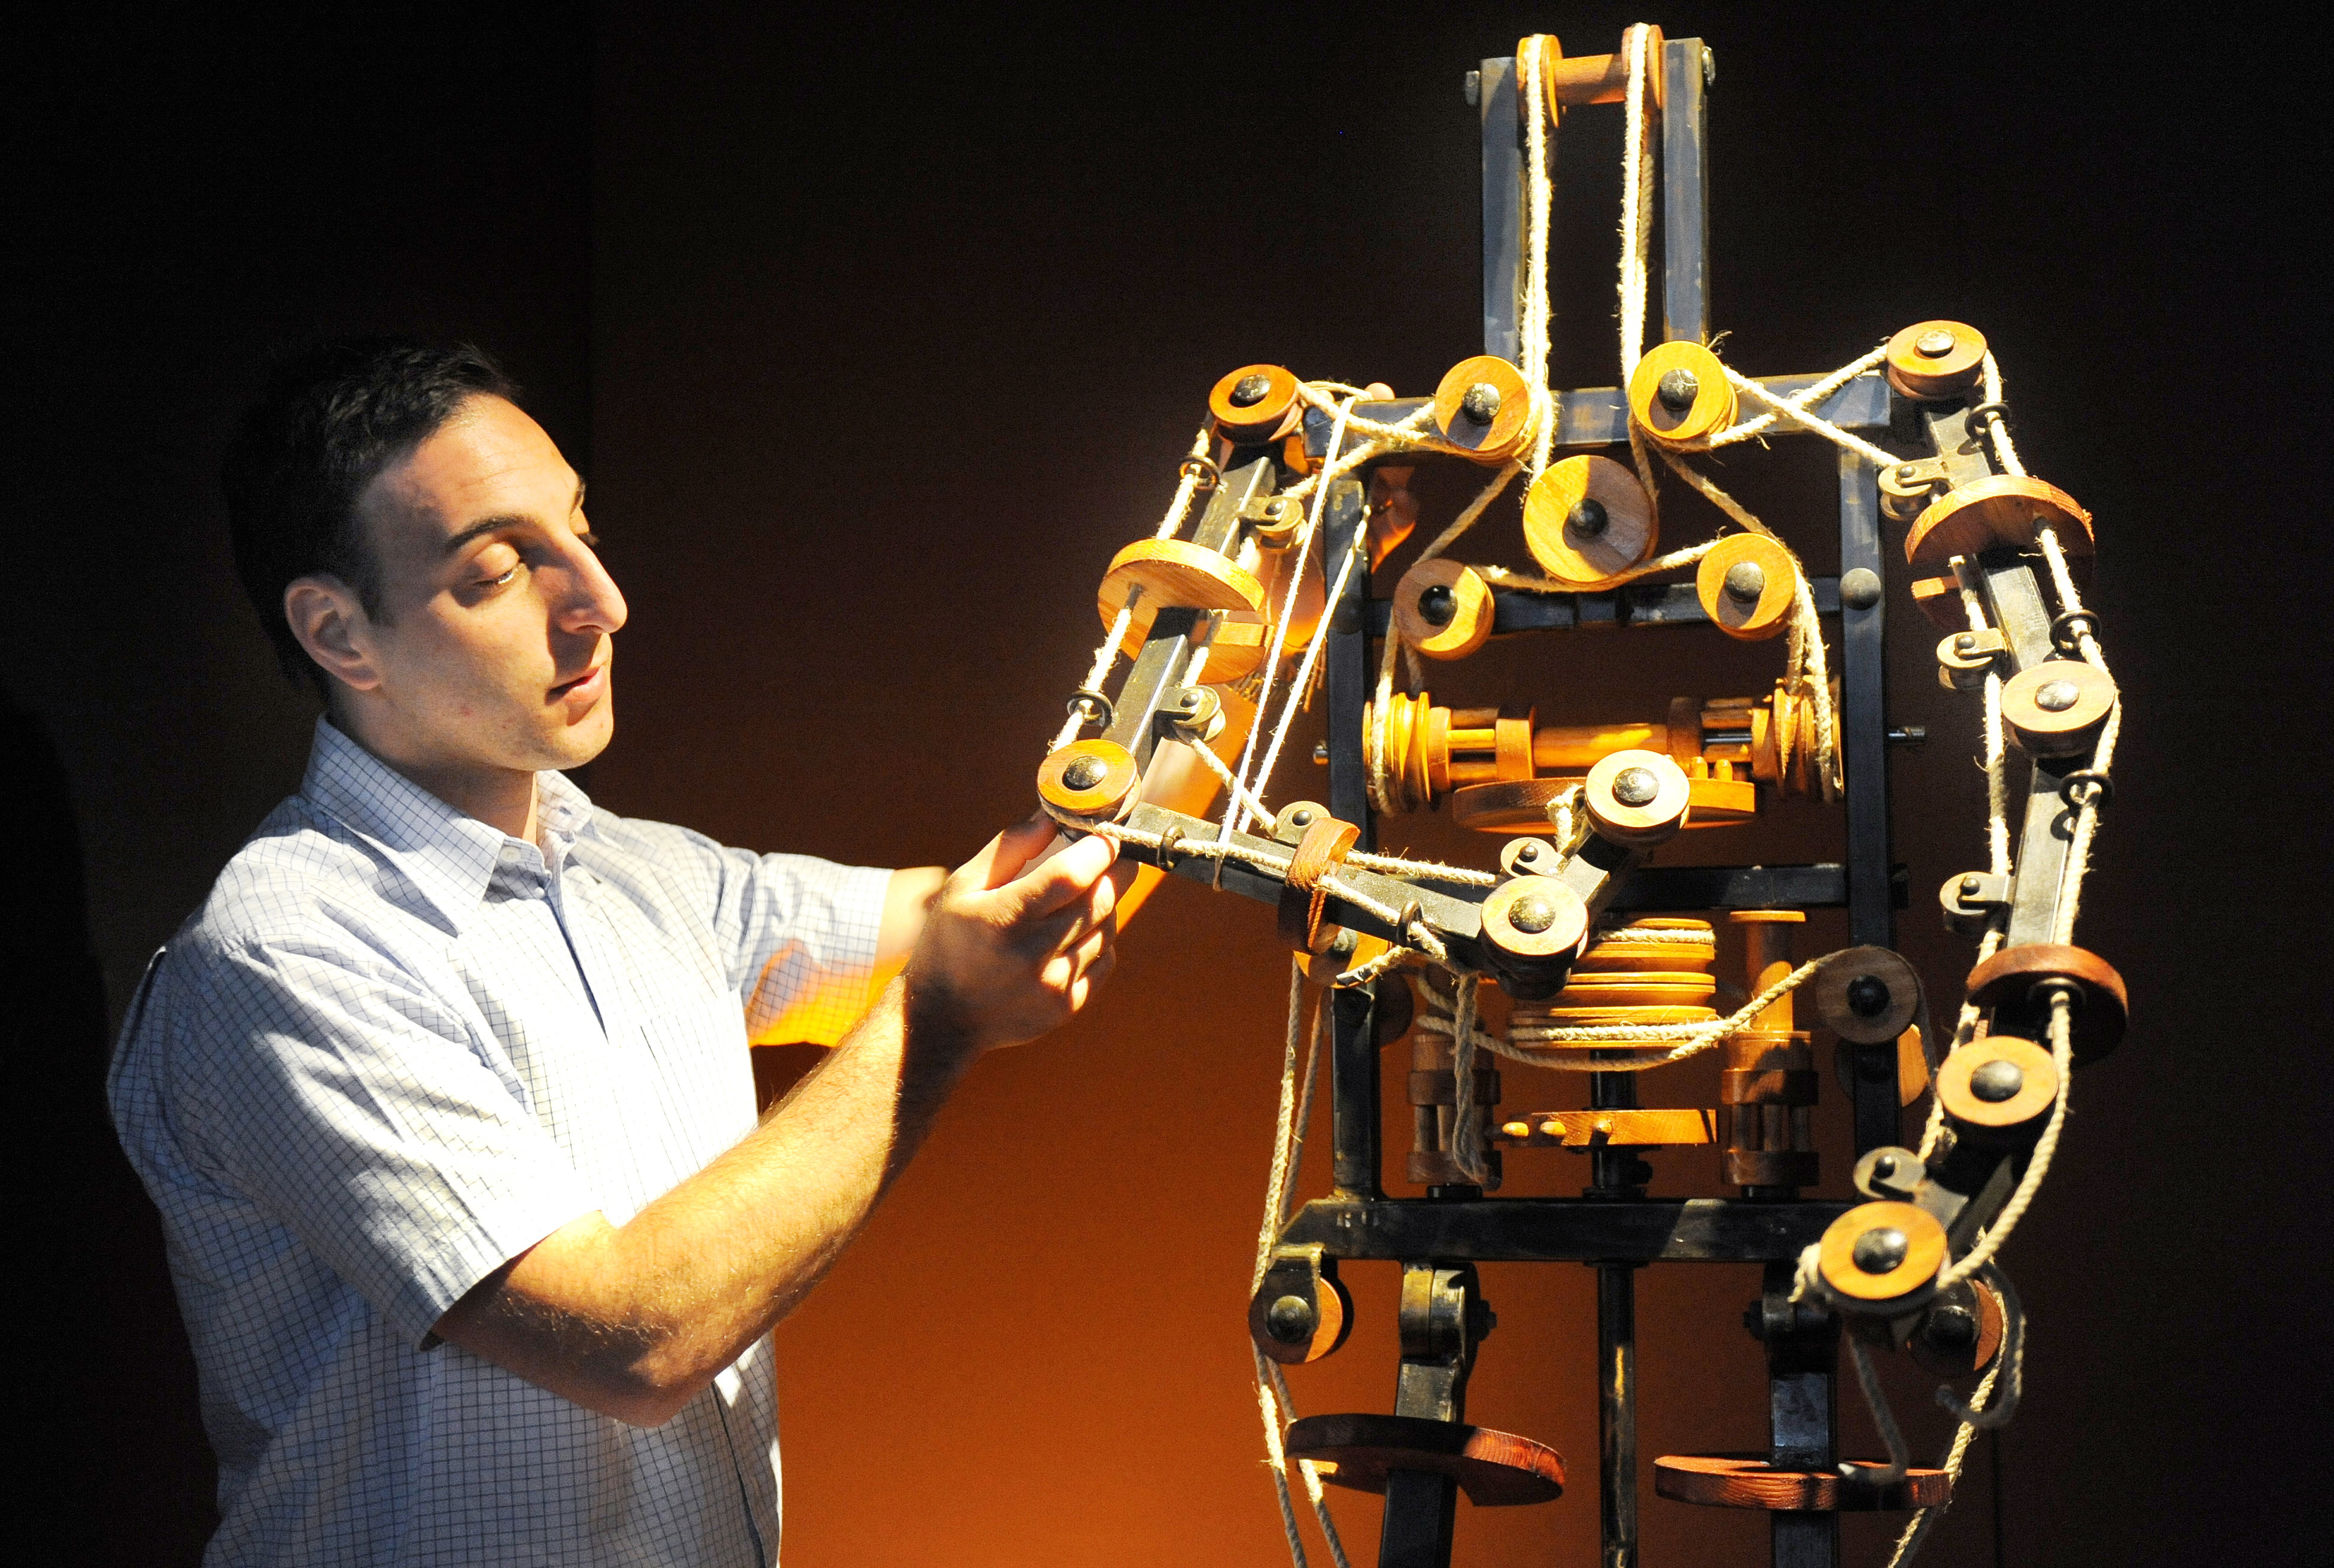 Механики шоу. Робот Леонардо Давинчи. Робот Леонардо да Винчи 1495. Робот изобретение Леонарда до Винчи. Автоматоны Леонардо да Винчи.